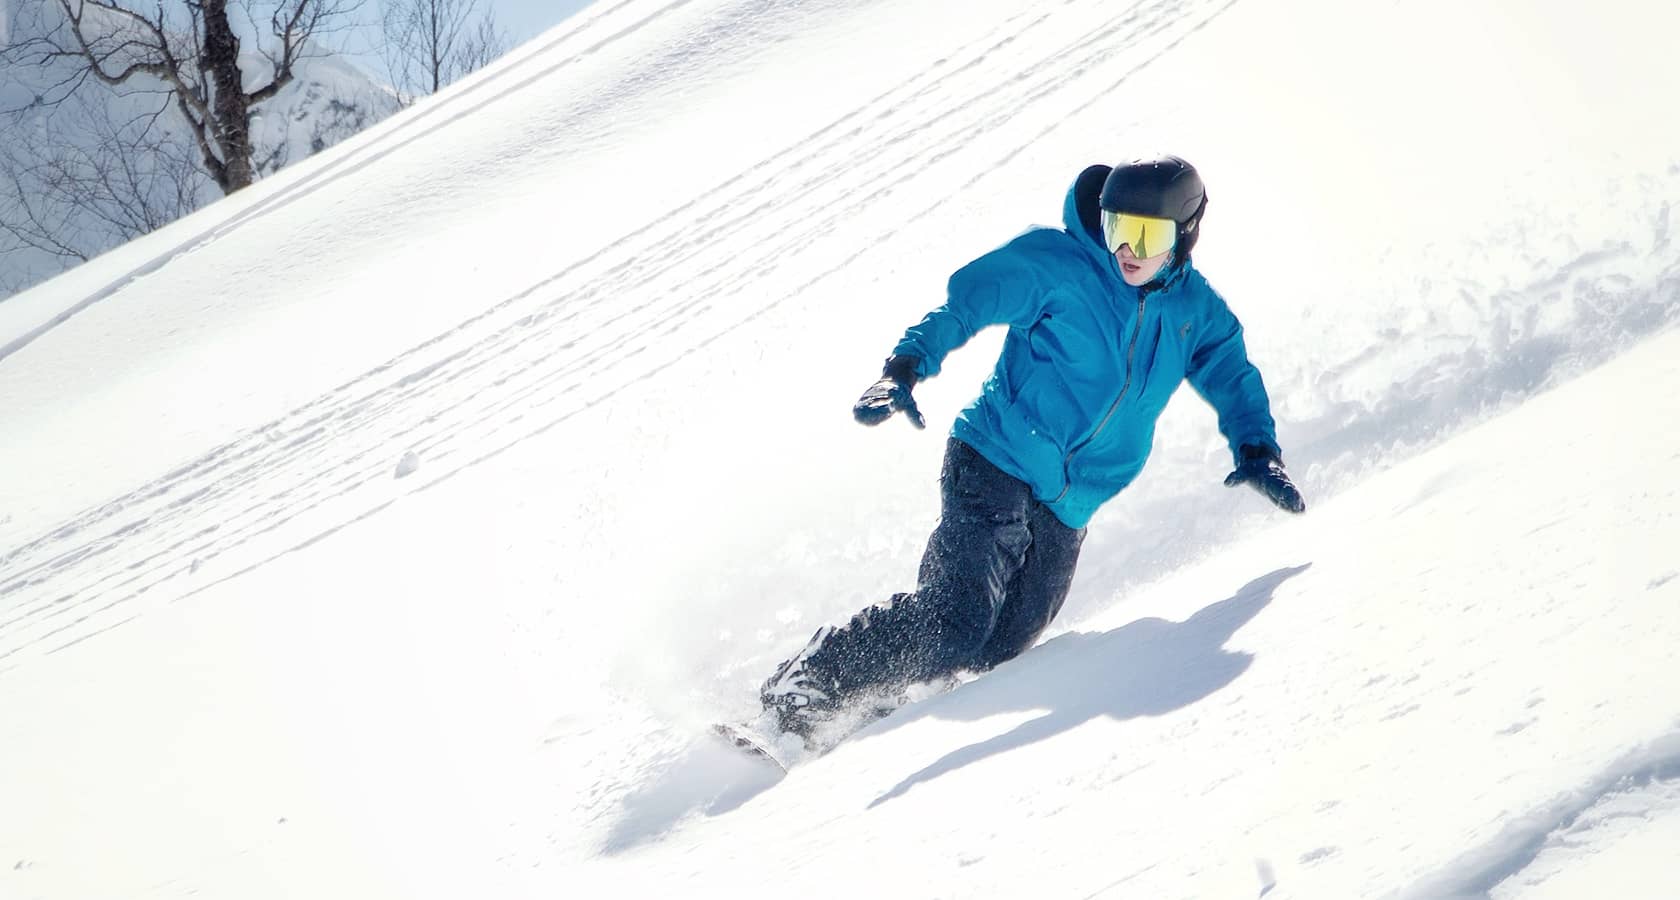 Спуск на сноуборде описание фотографии